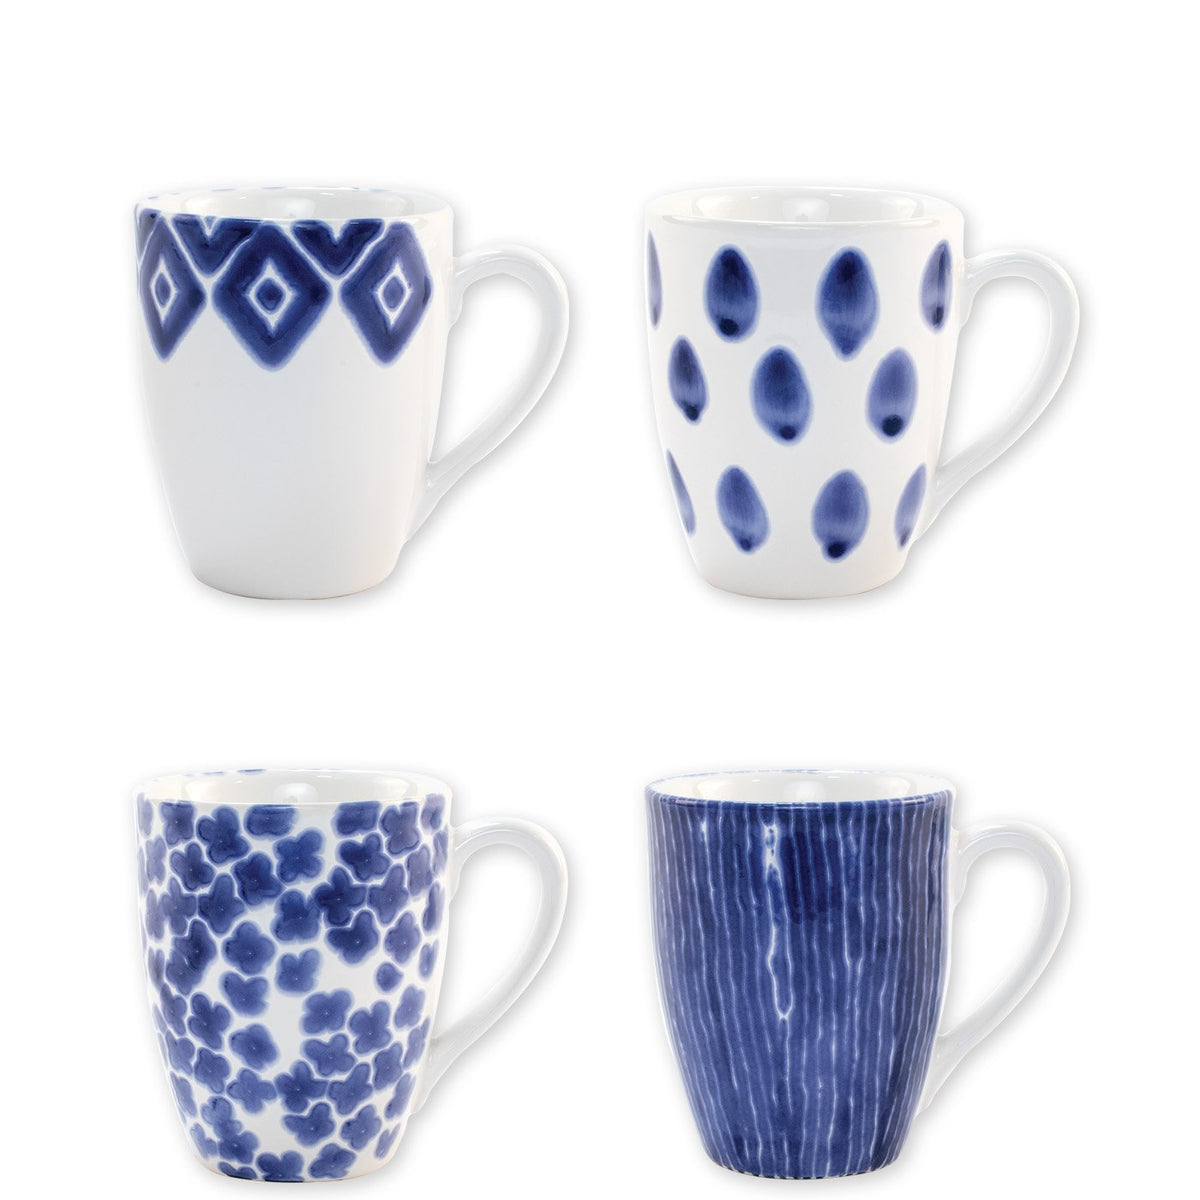 VIETRI: Santorini Assorted Mugs - Set of 4 - Artistica.com